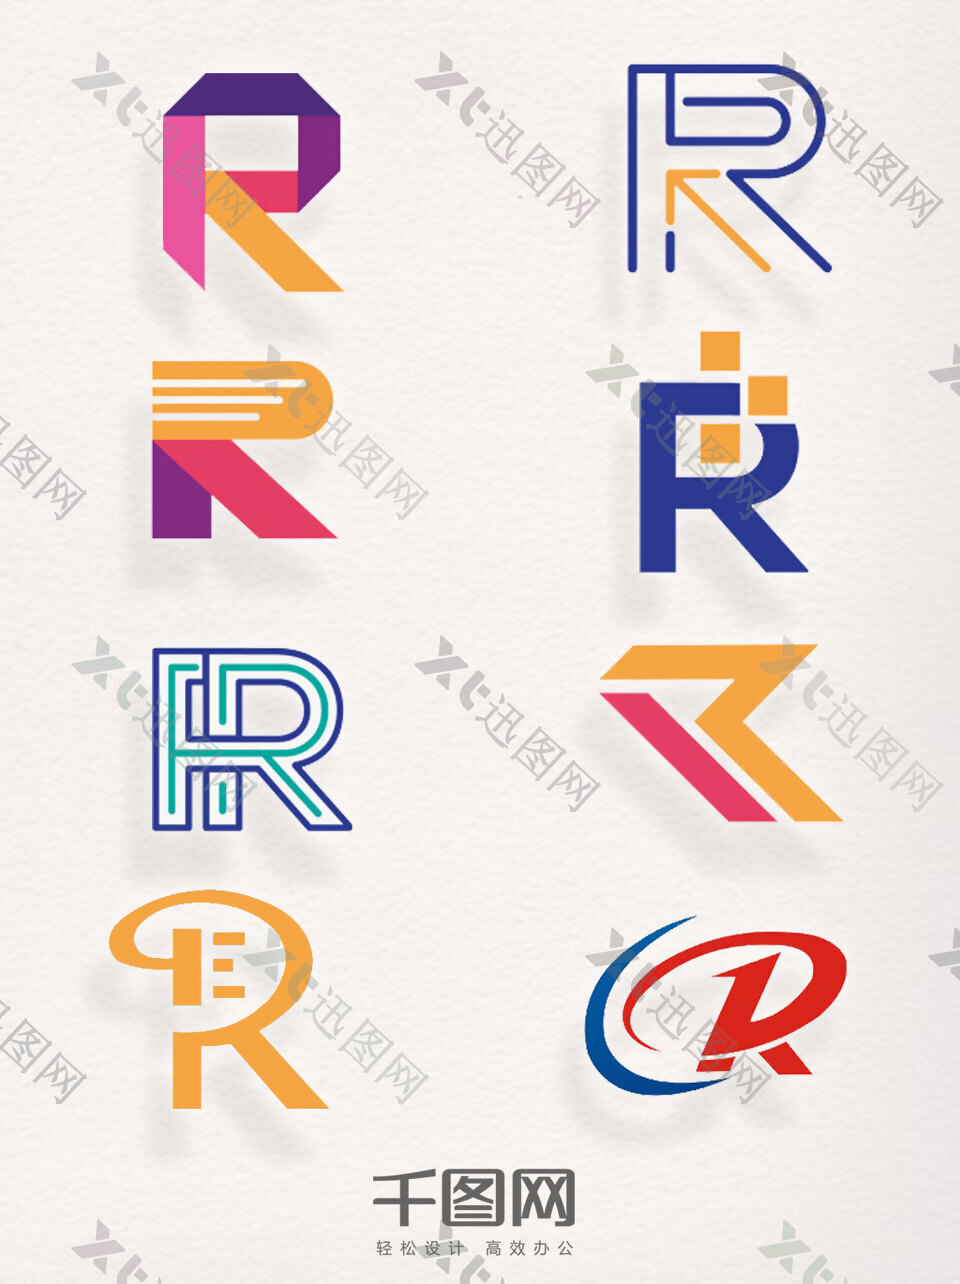 注册商标R元素字母装饰图案艺术图标素材集合